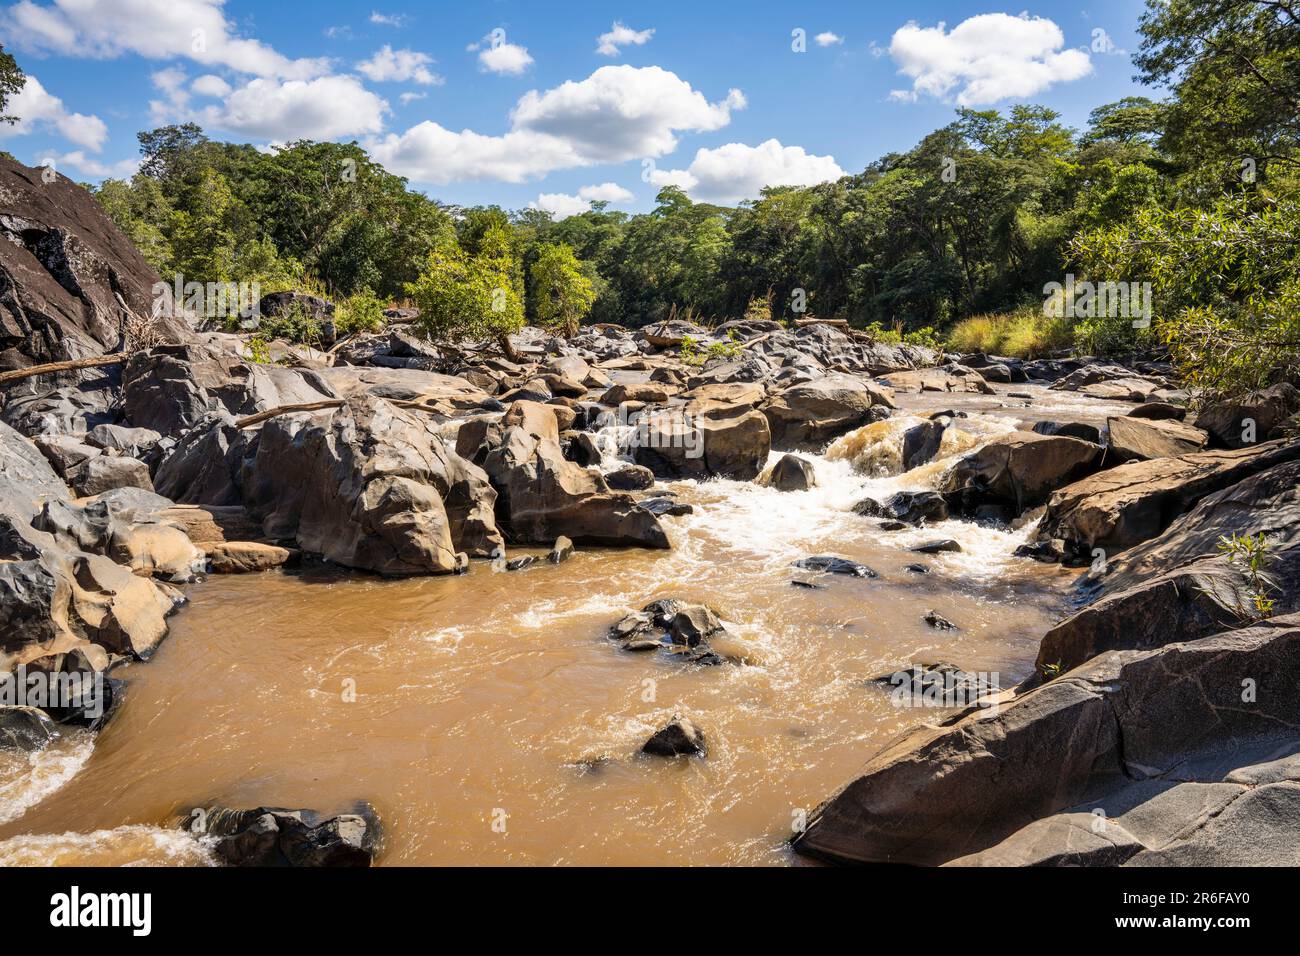 Bua River in Nkhotakota wildlife reserve, Malawi Stock Photo